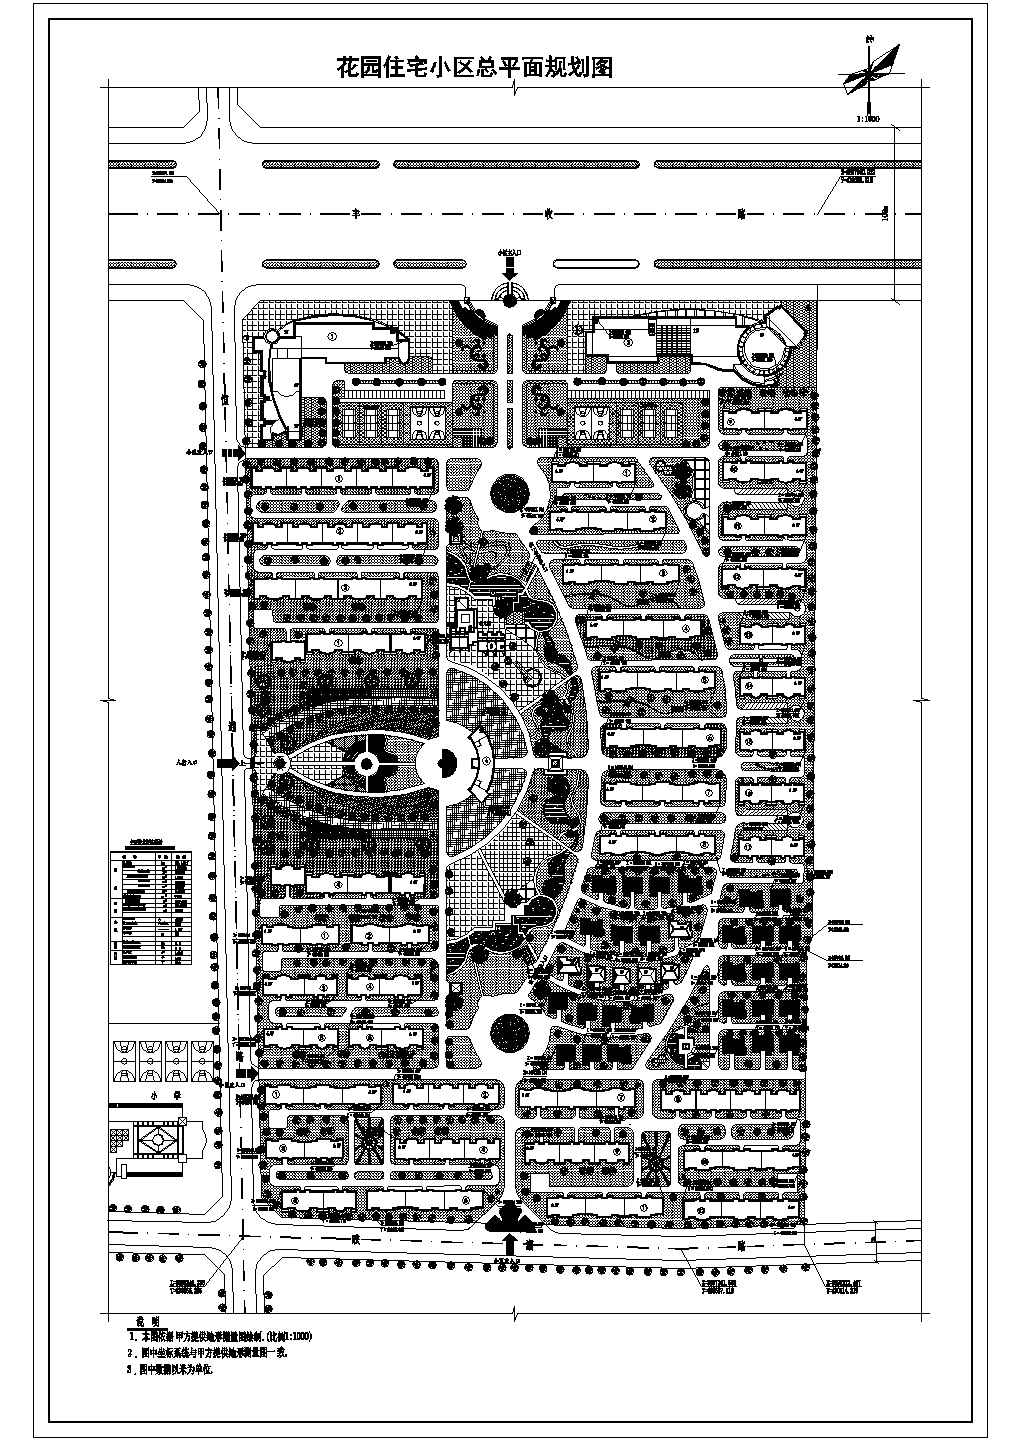 总用地23.1317ha花园住宅小区总平面规划cad图